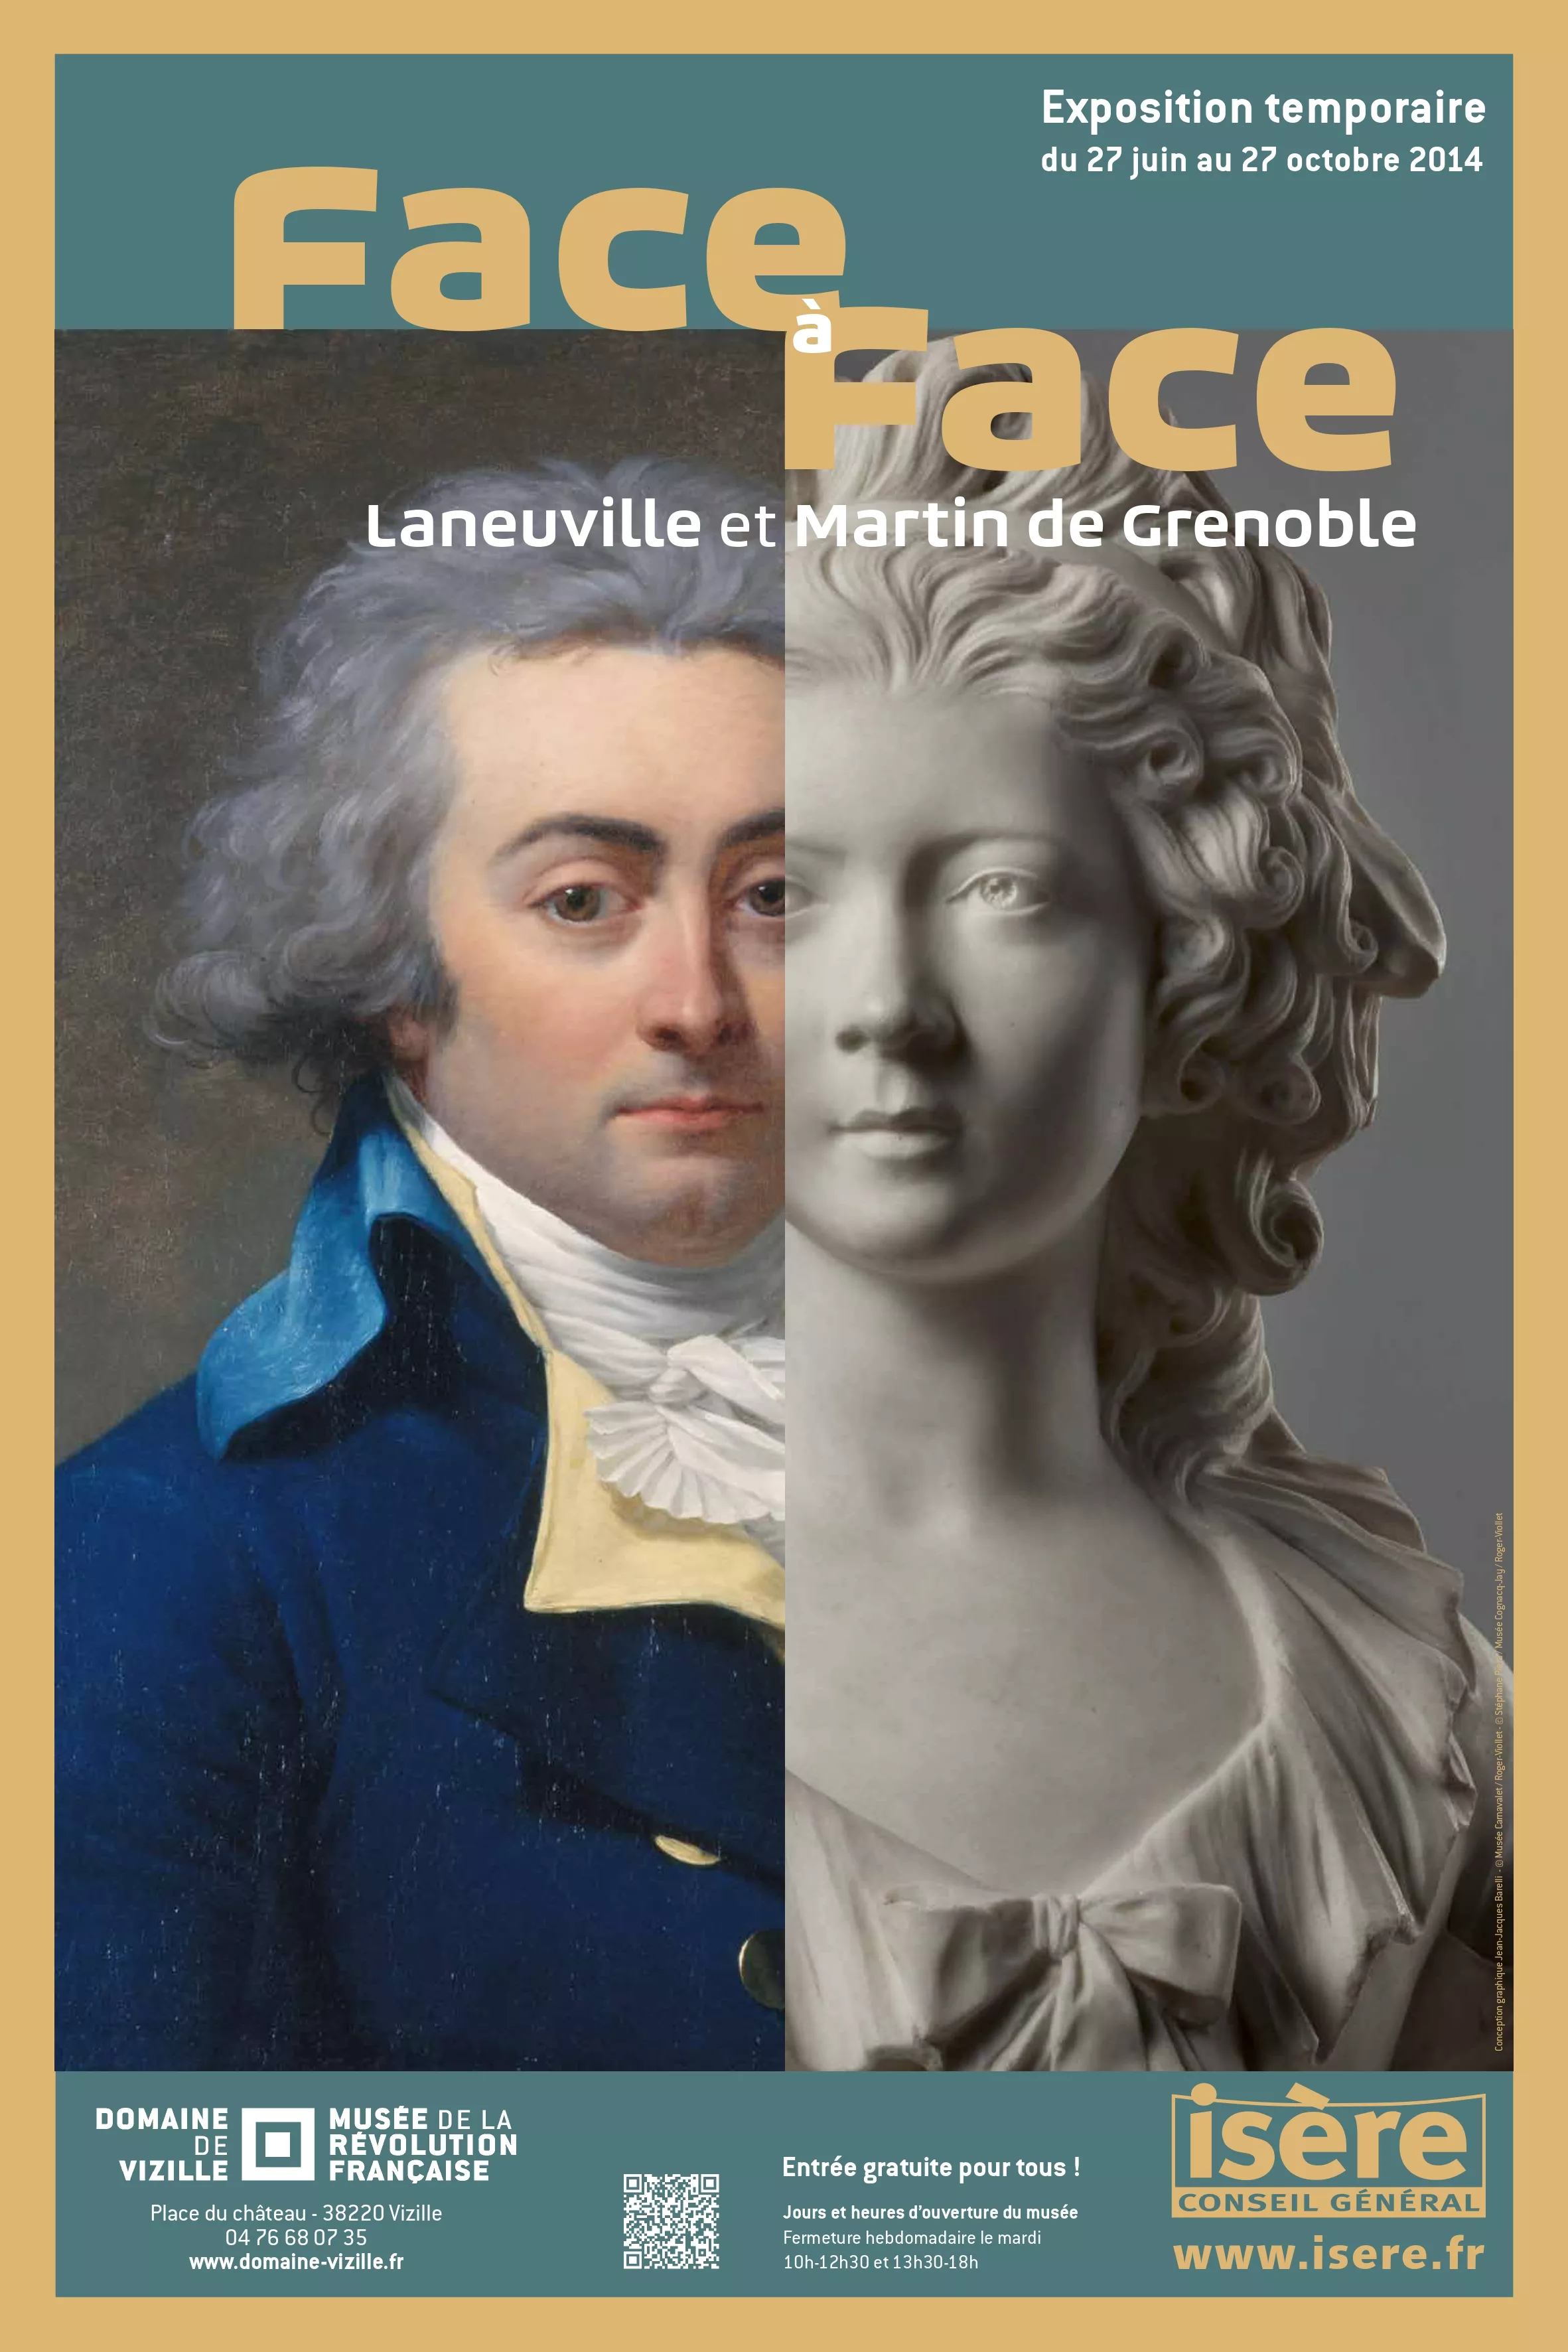 Face à face, Laneuville et Martin de Grenoble © Domaine de Vizille / Département de l'Isère